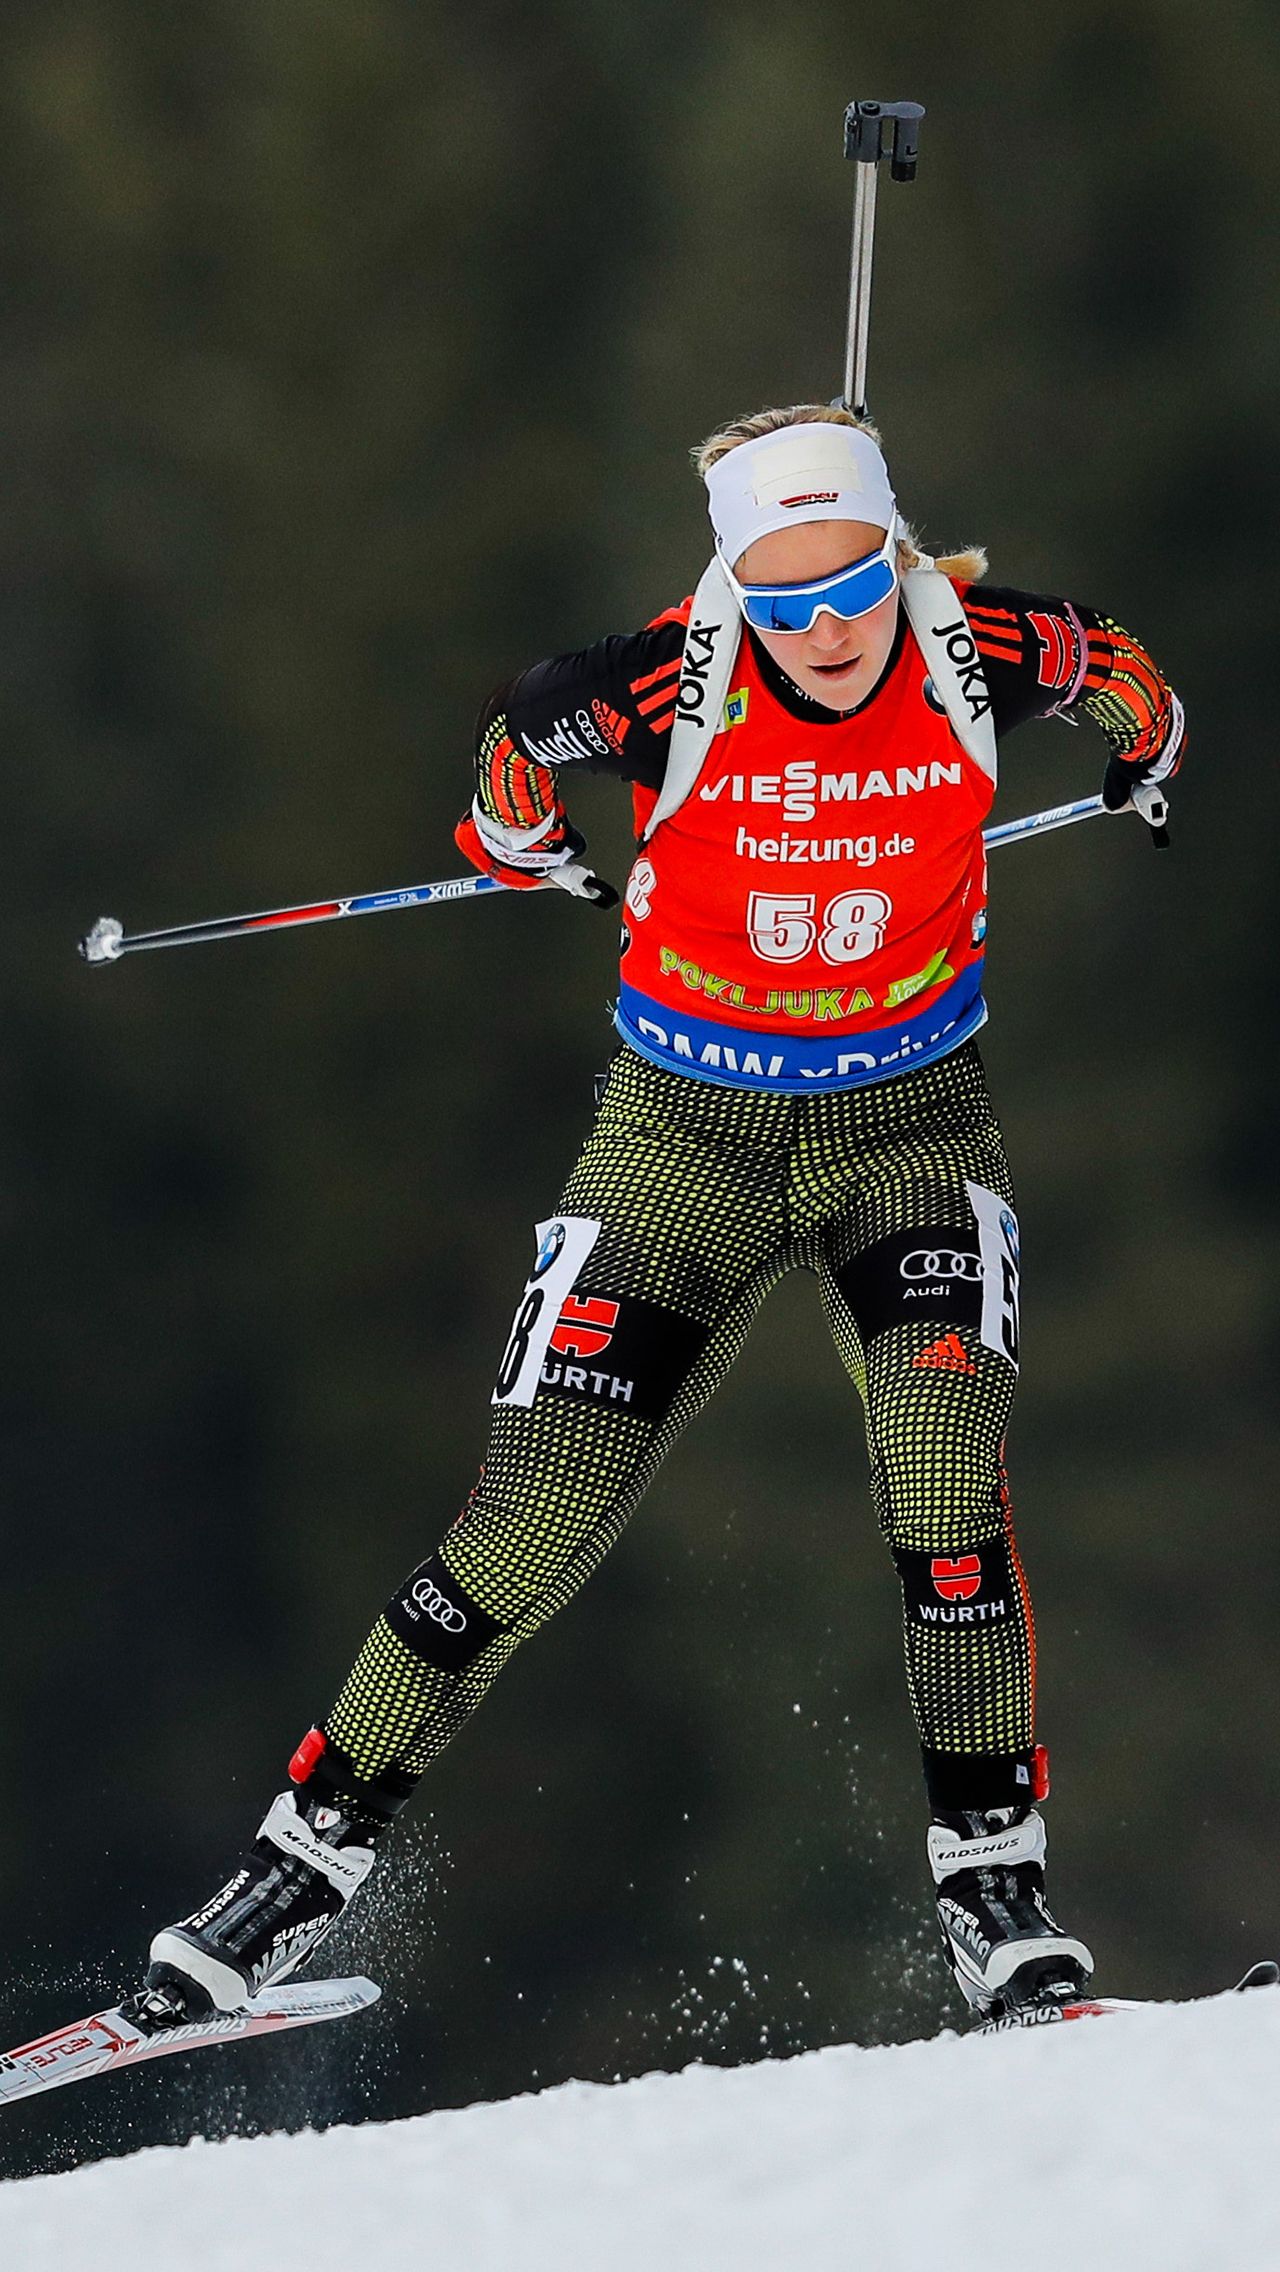 В двух видах спорта проявила себя немка Мириам Гёсснер. Она выиграла юниорский ЧМ по биатлону, перешла в лыжи, где выиграла медаль Олимпиады, после чего вернулась в биатлон и стала чемпионкой мира.